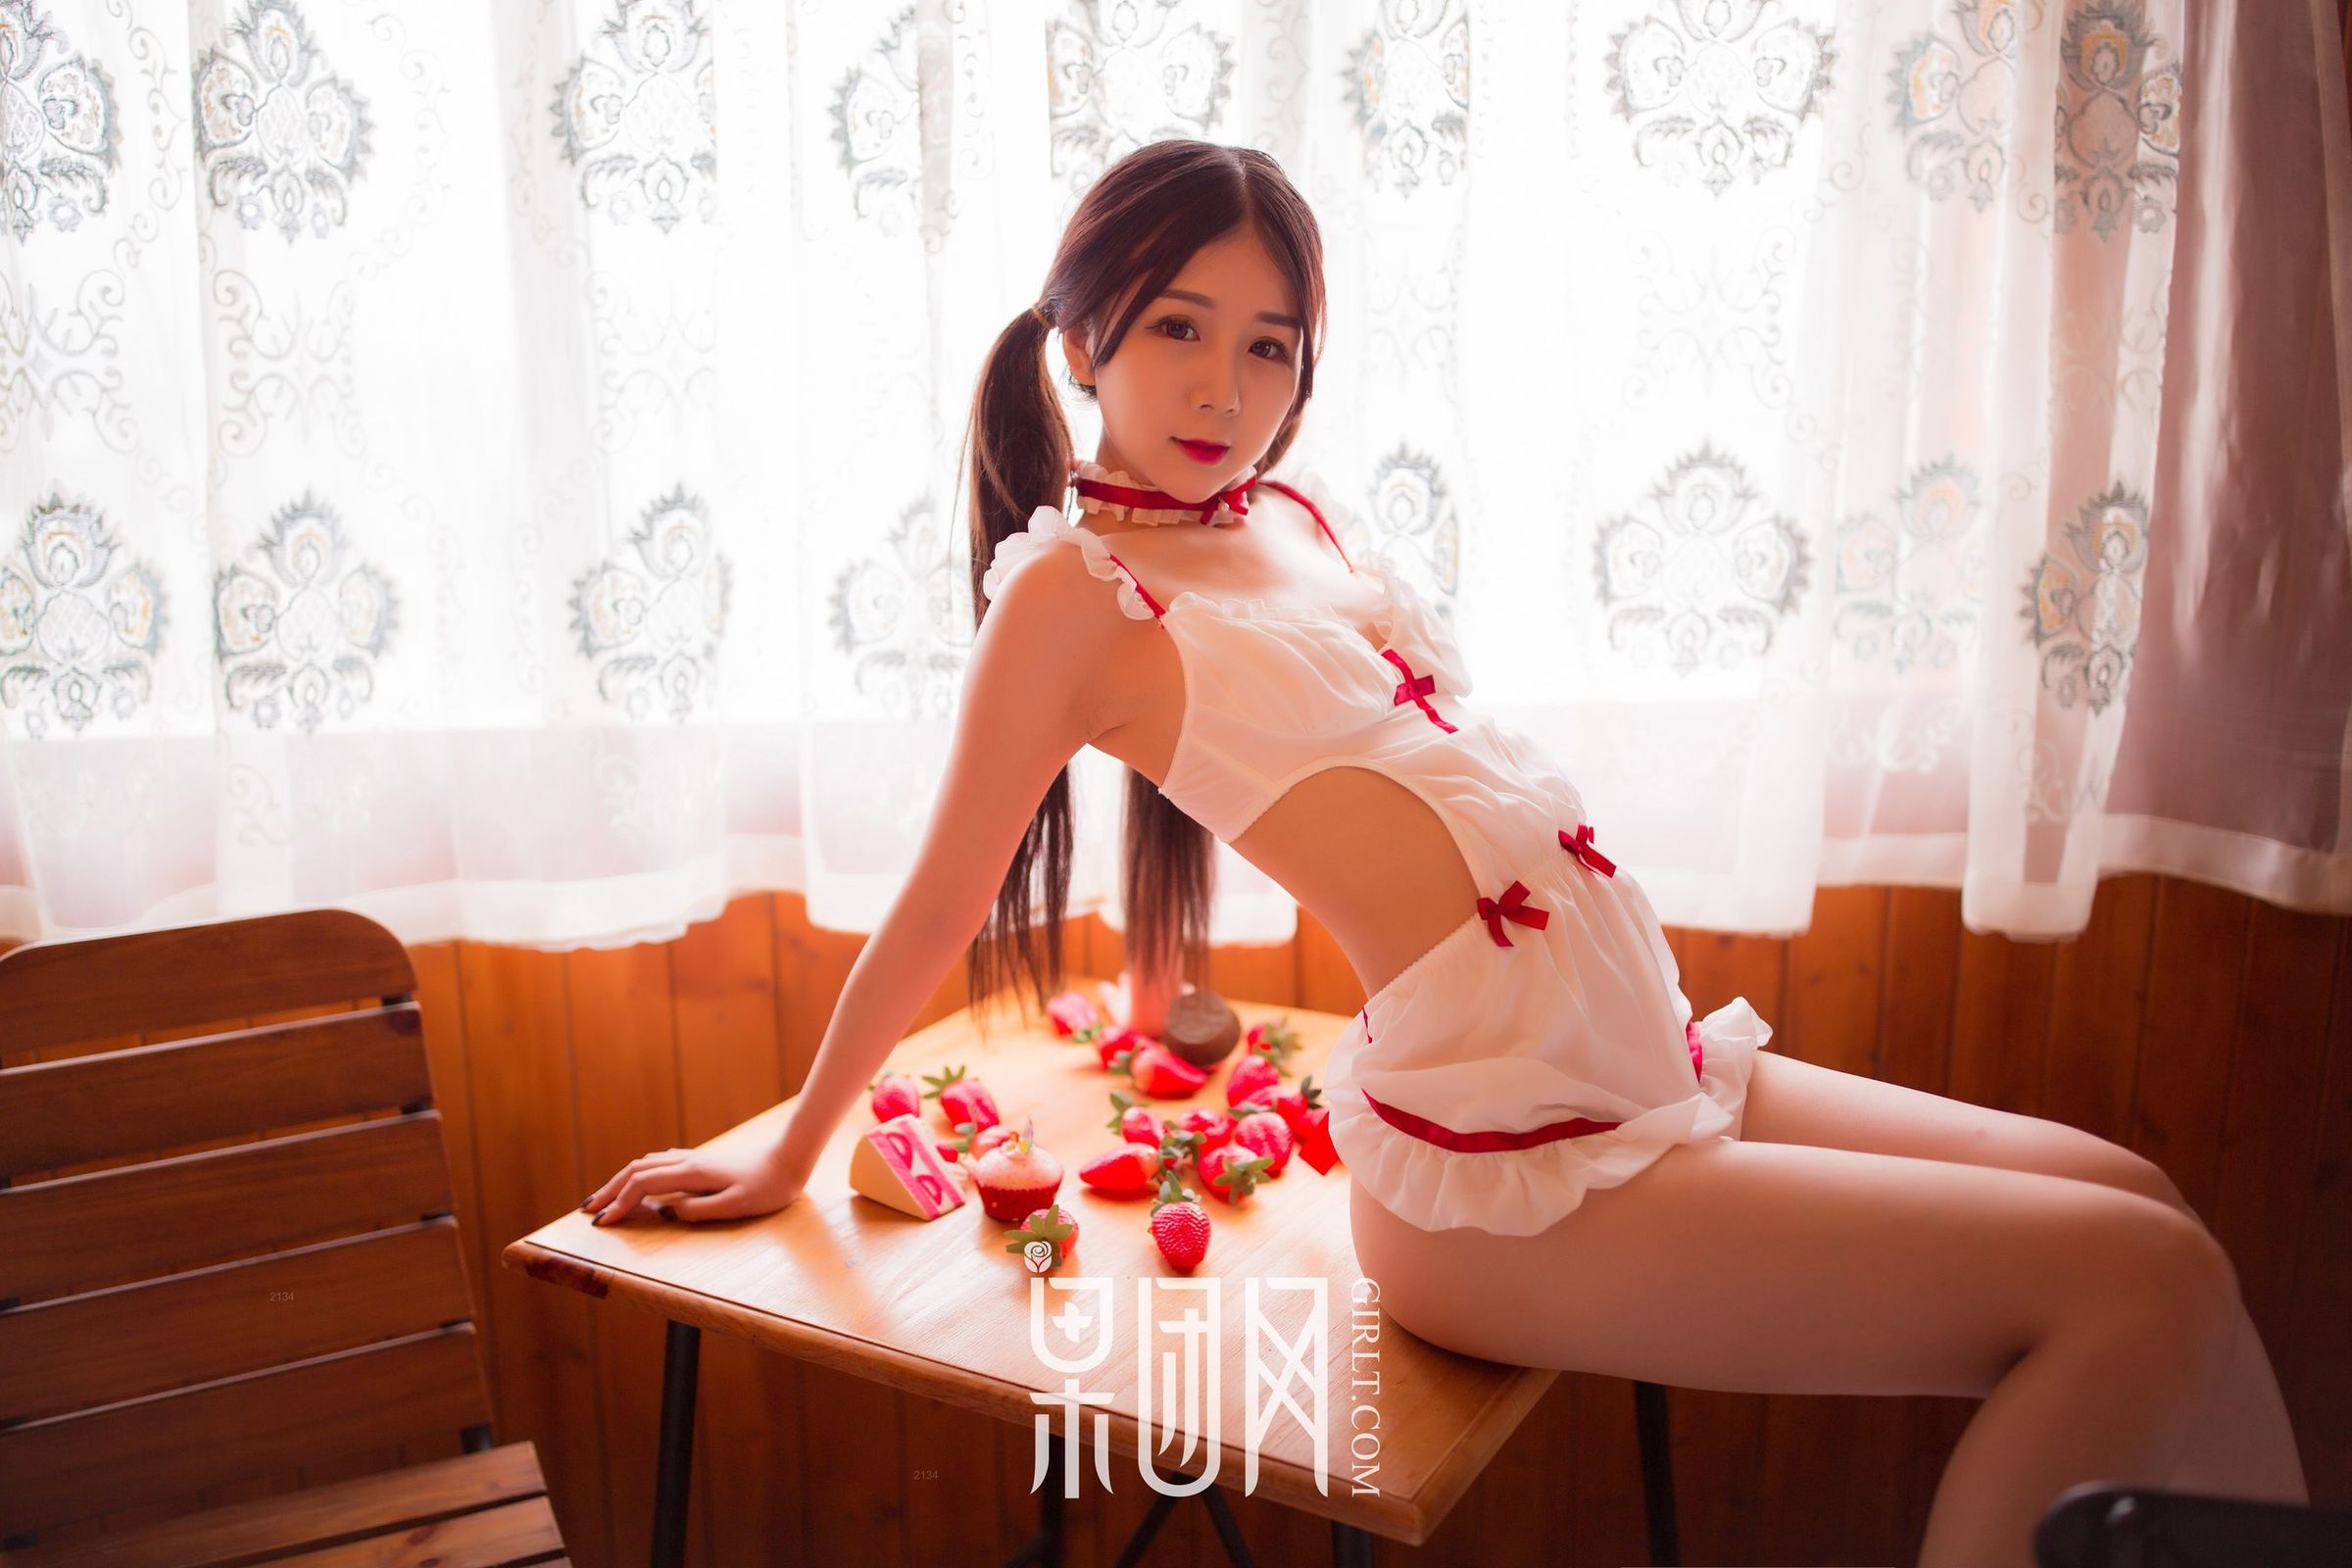 taotuhome[Girlt果团]熊川纪信 No.024 草莓女孩鲜嫩多汁!第18张